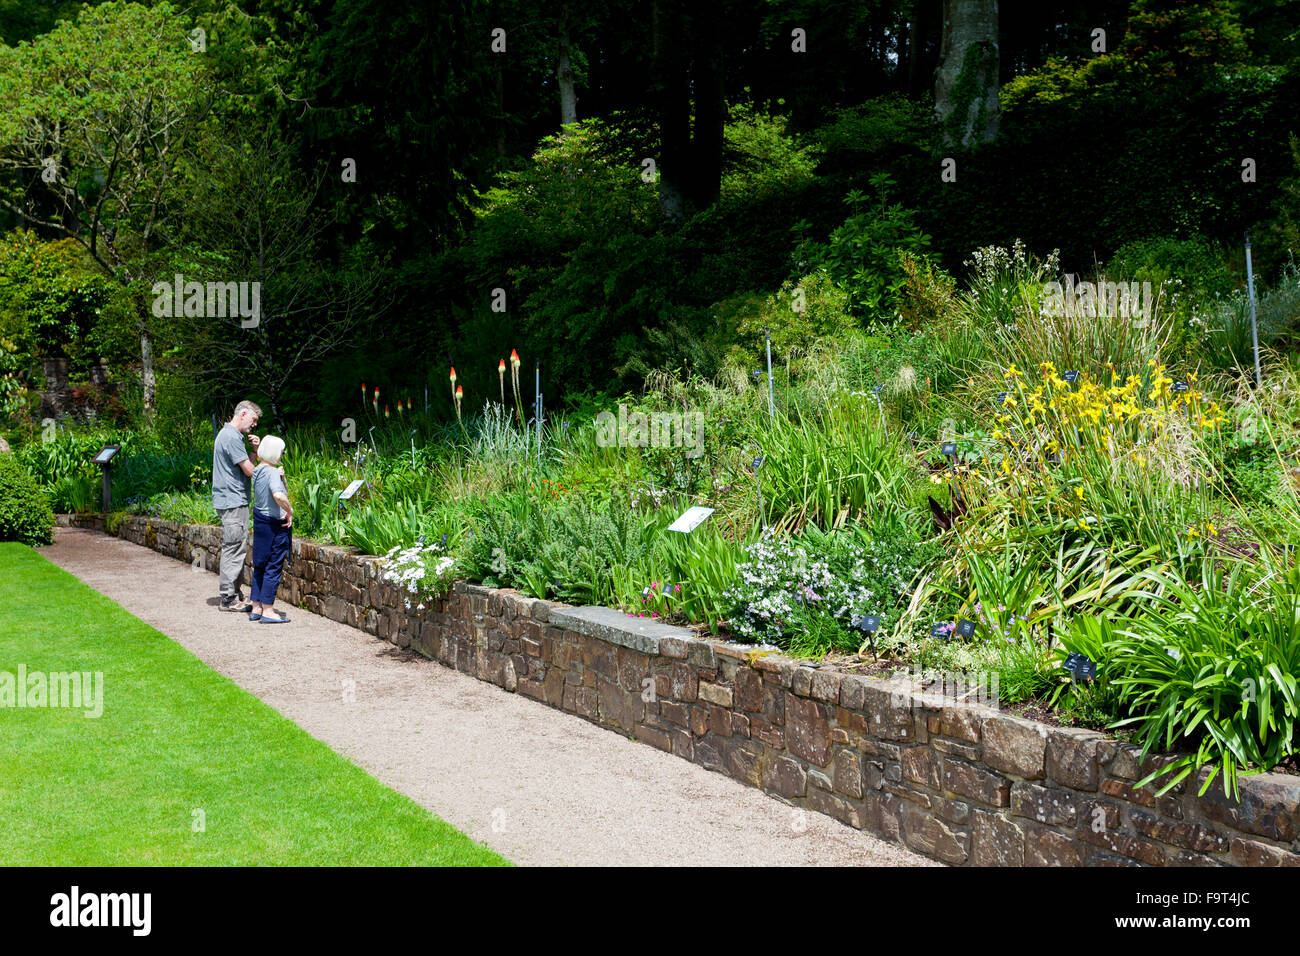 Les visiteurs d'admirer le jardin bien garni Croquet des frontières au RHS Rosemoor, North Devon, England, UK Banque D'Images